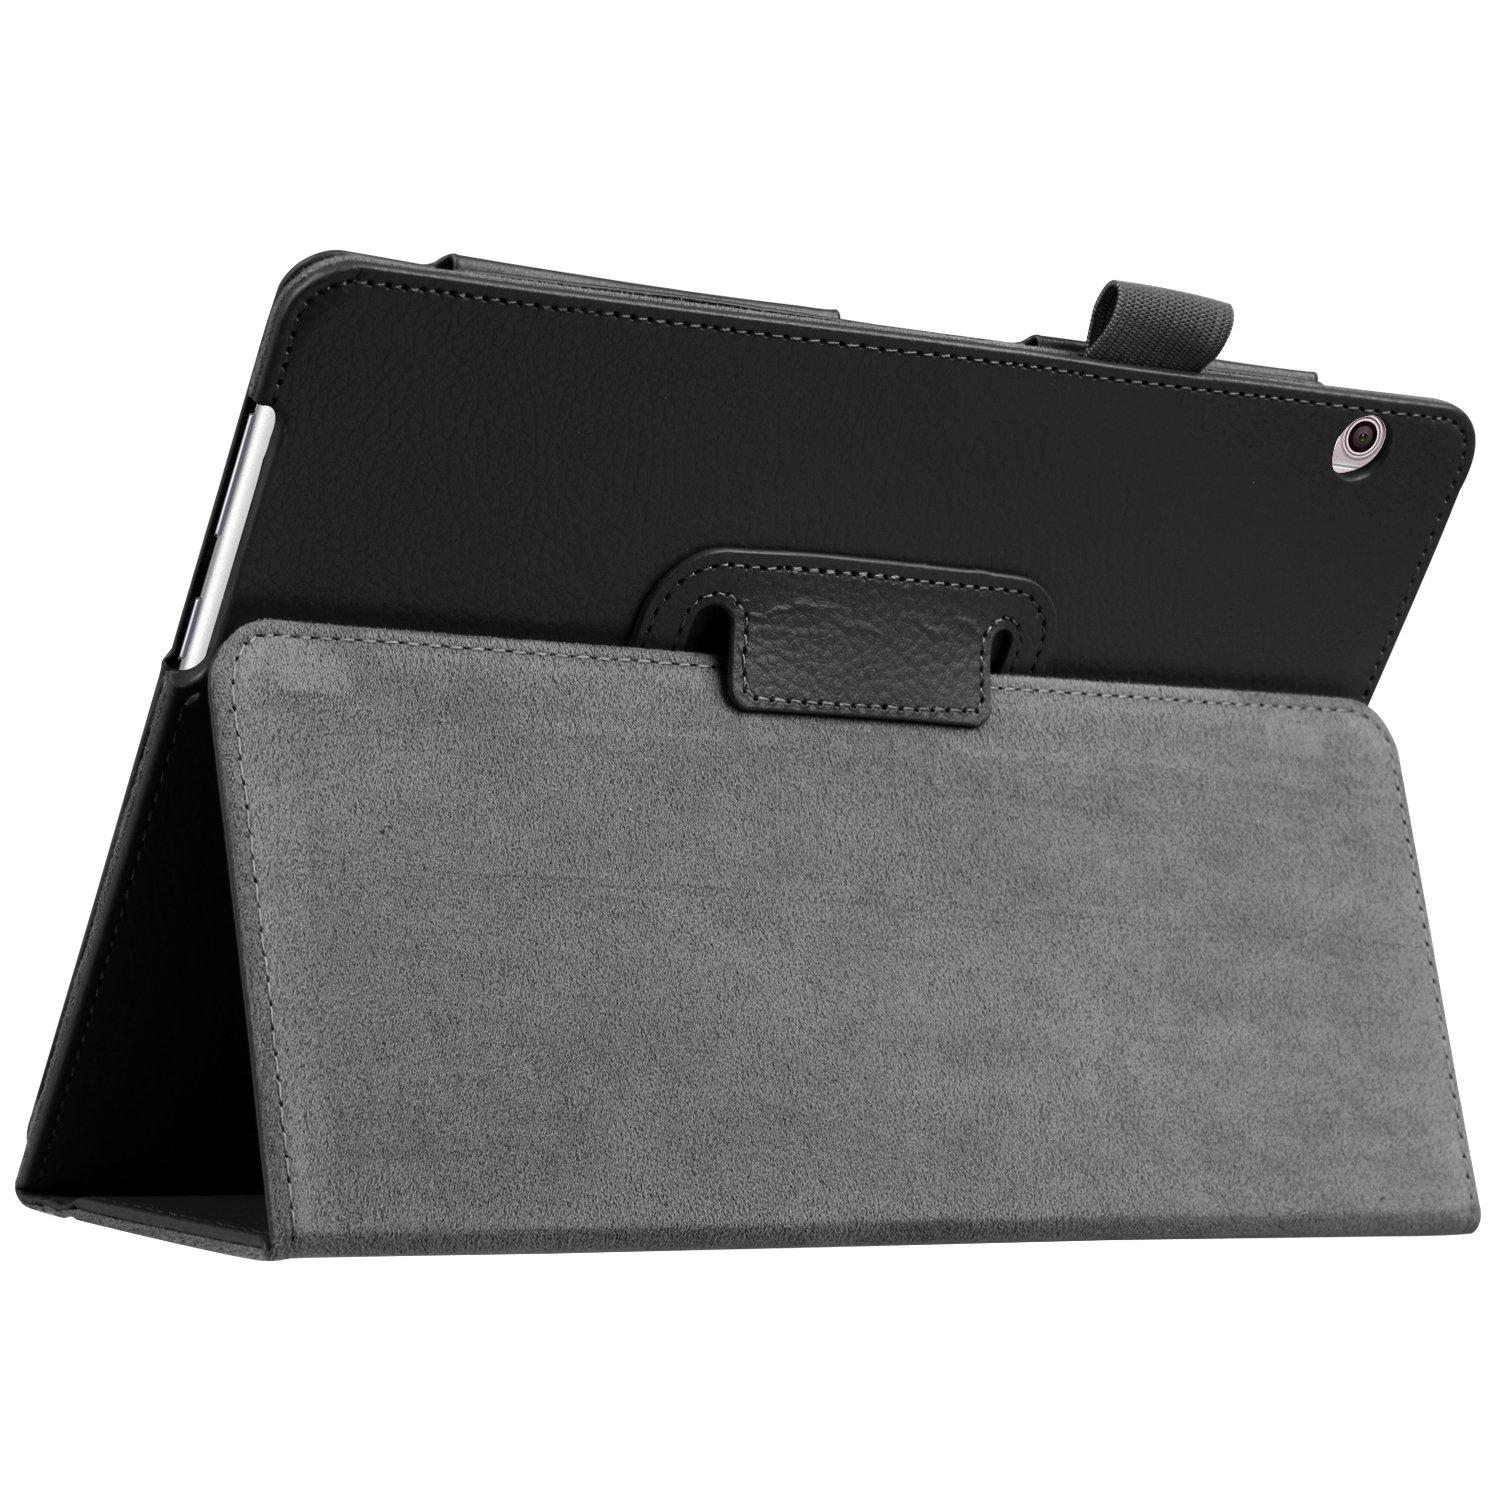 Изображение товара: Чехол для Huawei MediaPad T3 10 AGS-W09 /L09/L03, тонкий складной чехол-подставка из искусственной кожи для Honor Play Pad 2 9,6, чехлы для планшетов